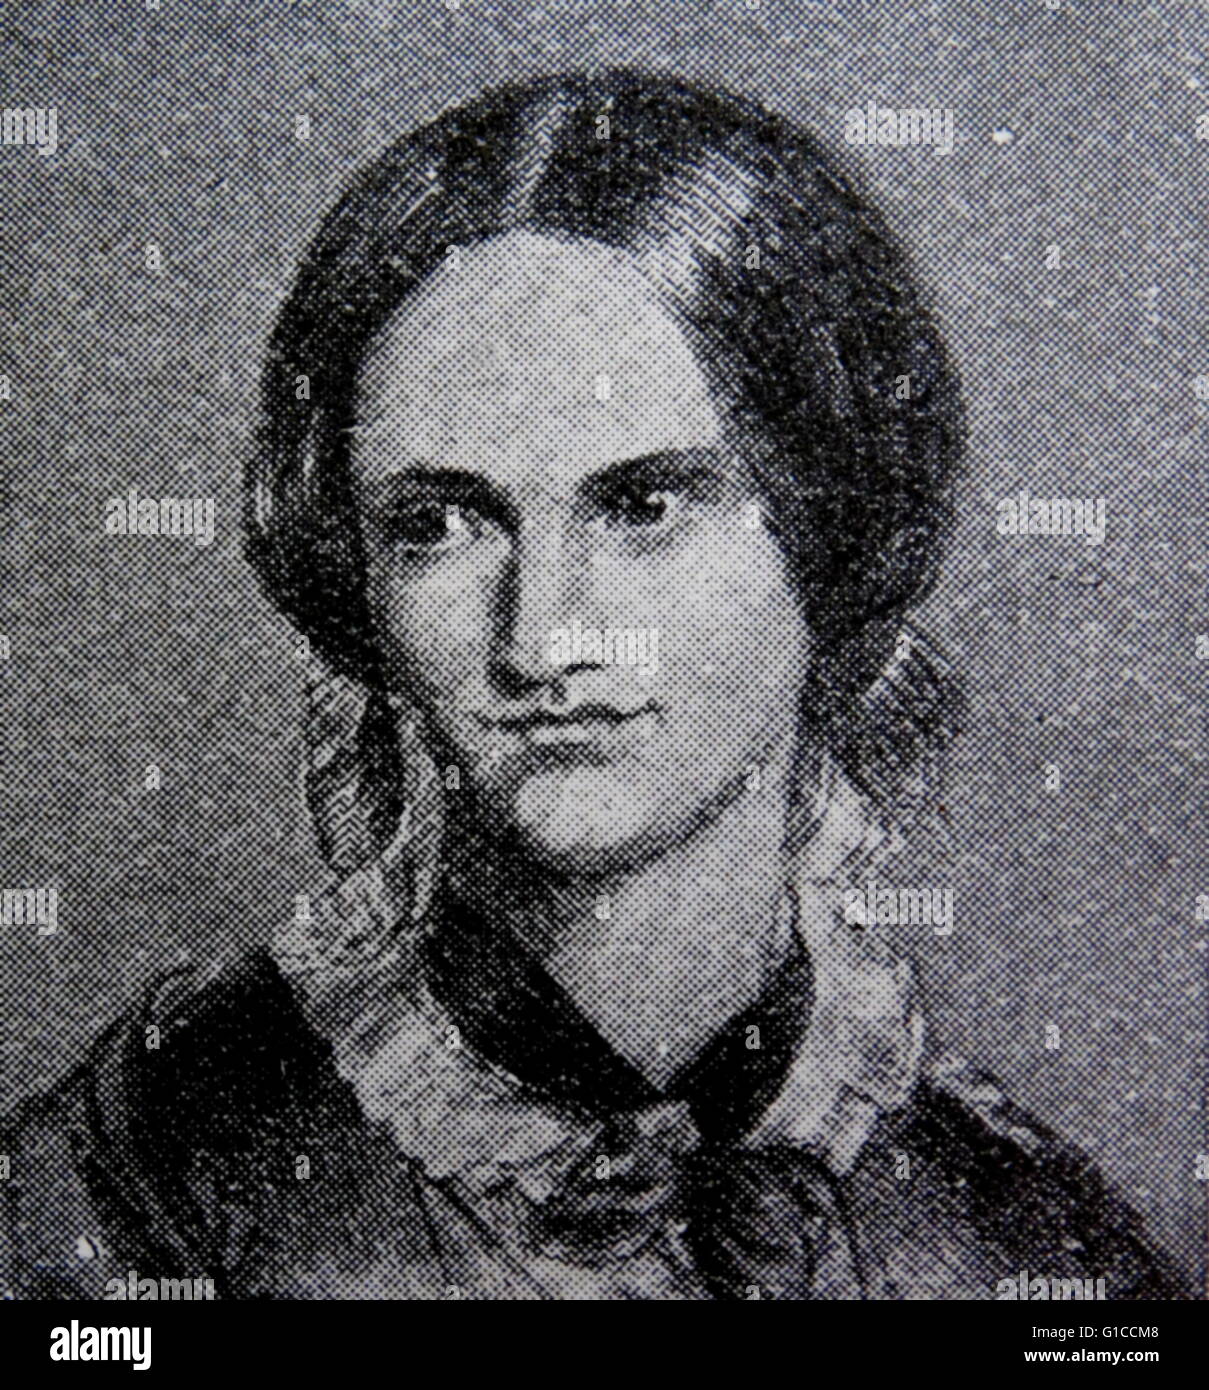 Porträt von Charlotte Bronte (1816-1855), englischer Schriftsteller und Dichter, der älteste der drei Schwestern Bronte. Vom 19. Jahrhundert Stockfoto